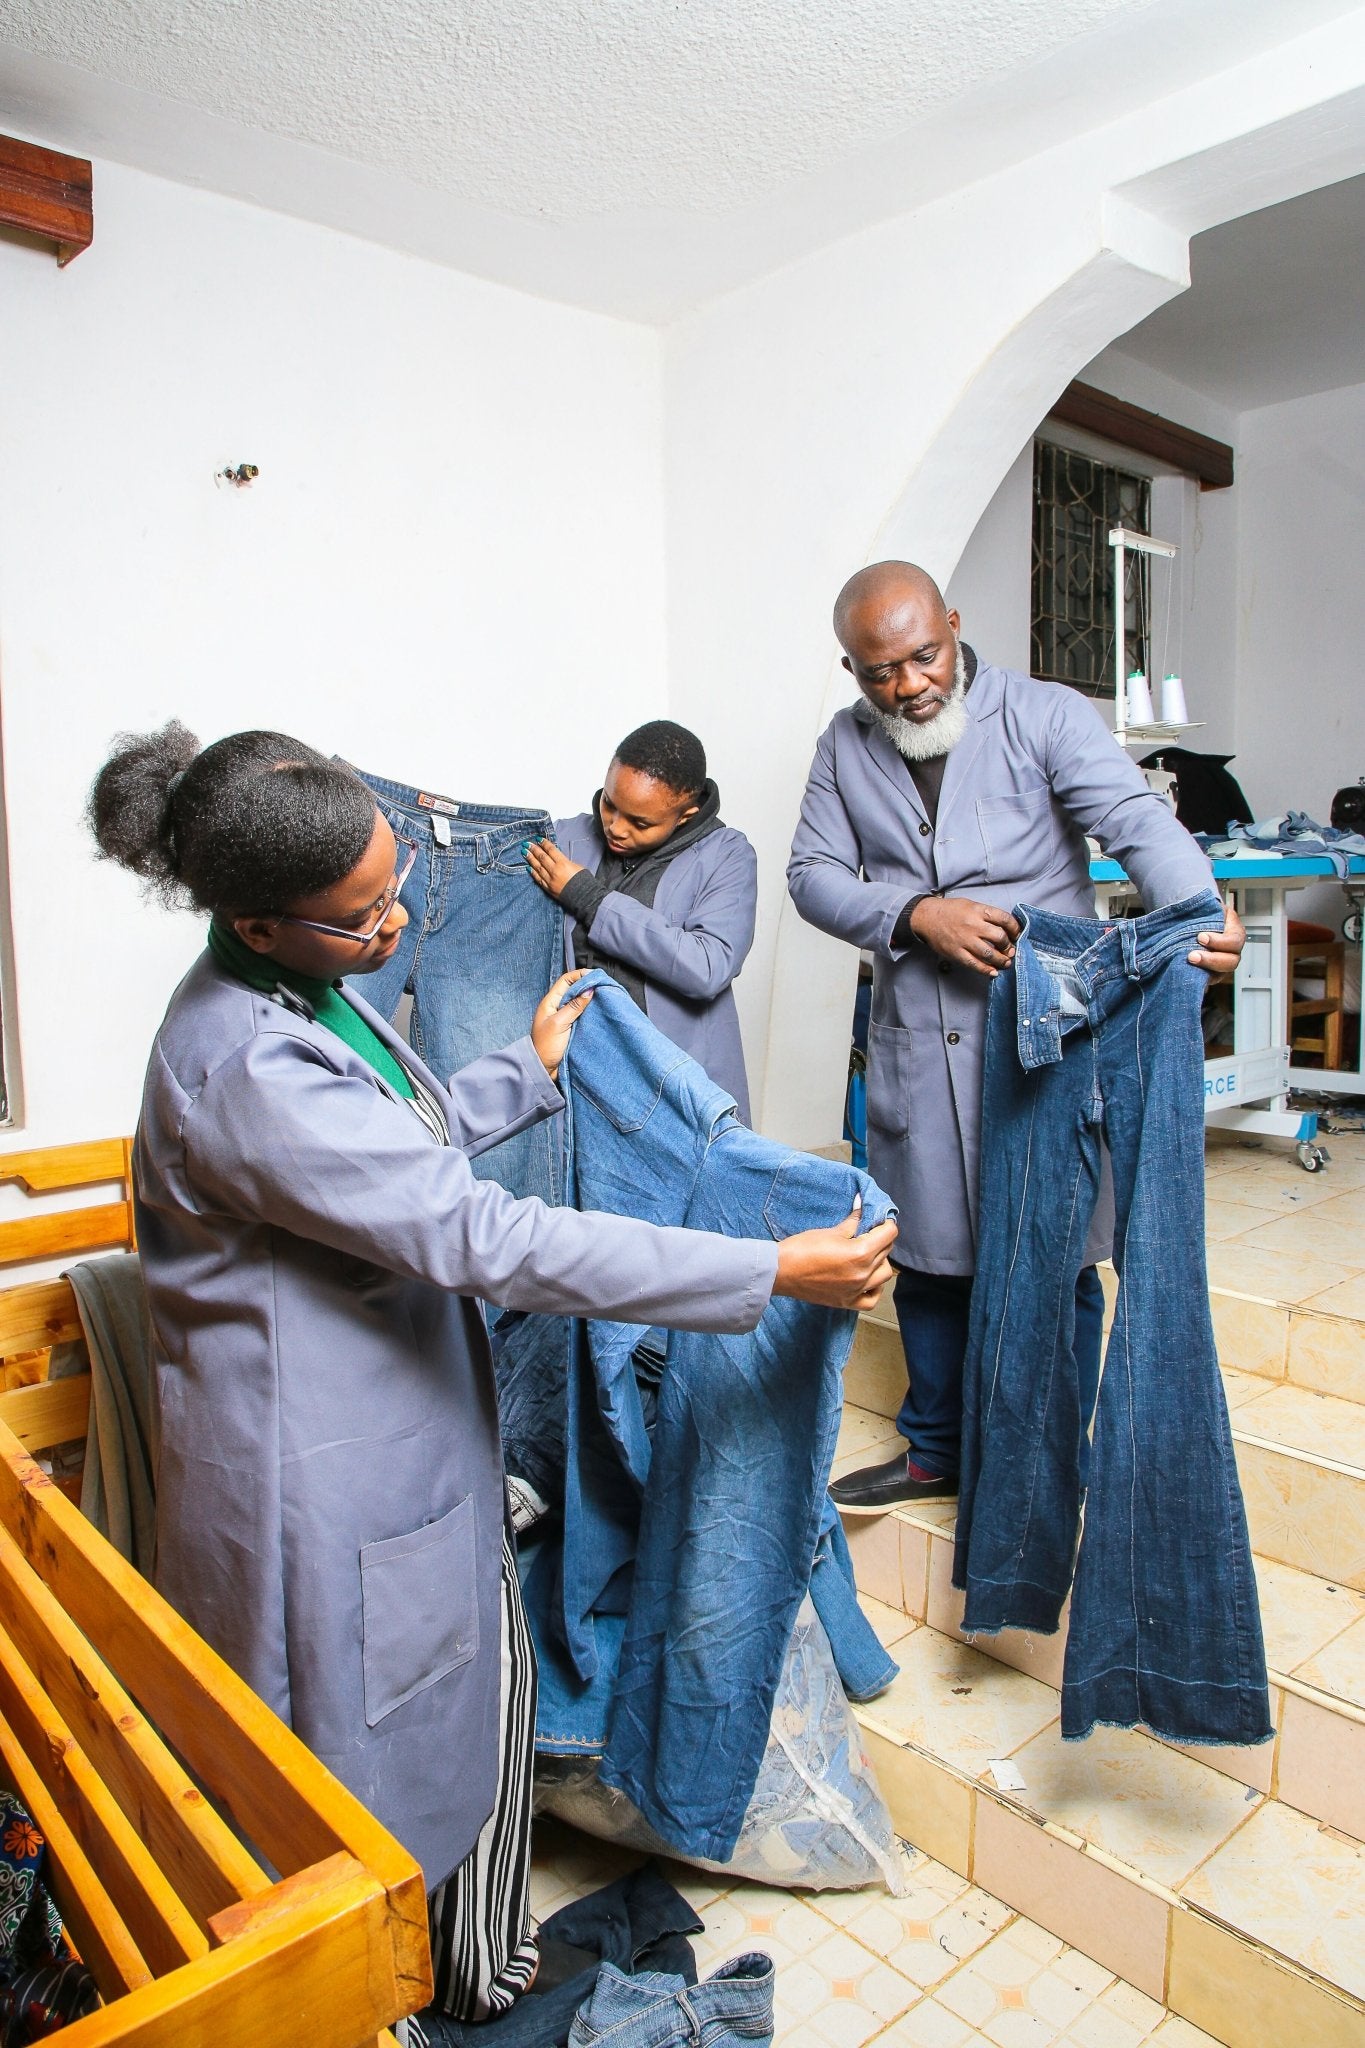 Wohnzimmer-Kissenbezug DENIM rechteckig - mikono.africa Jacken aus Kenia bunte Bomberjacke Partyjacke faire sozial nachhaltig designed in Kenia